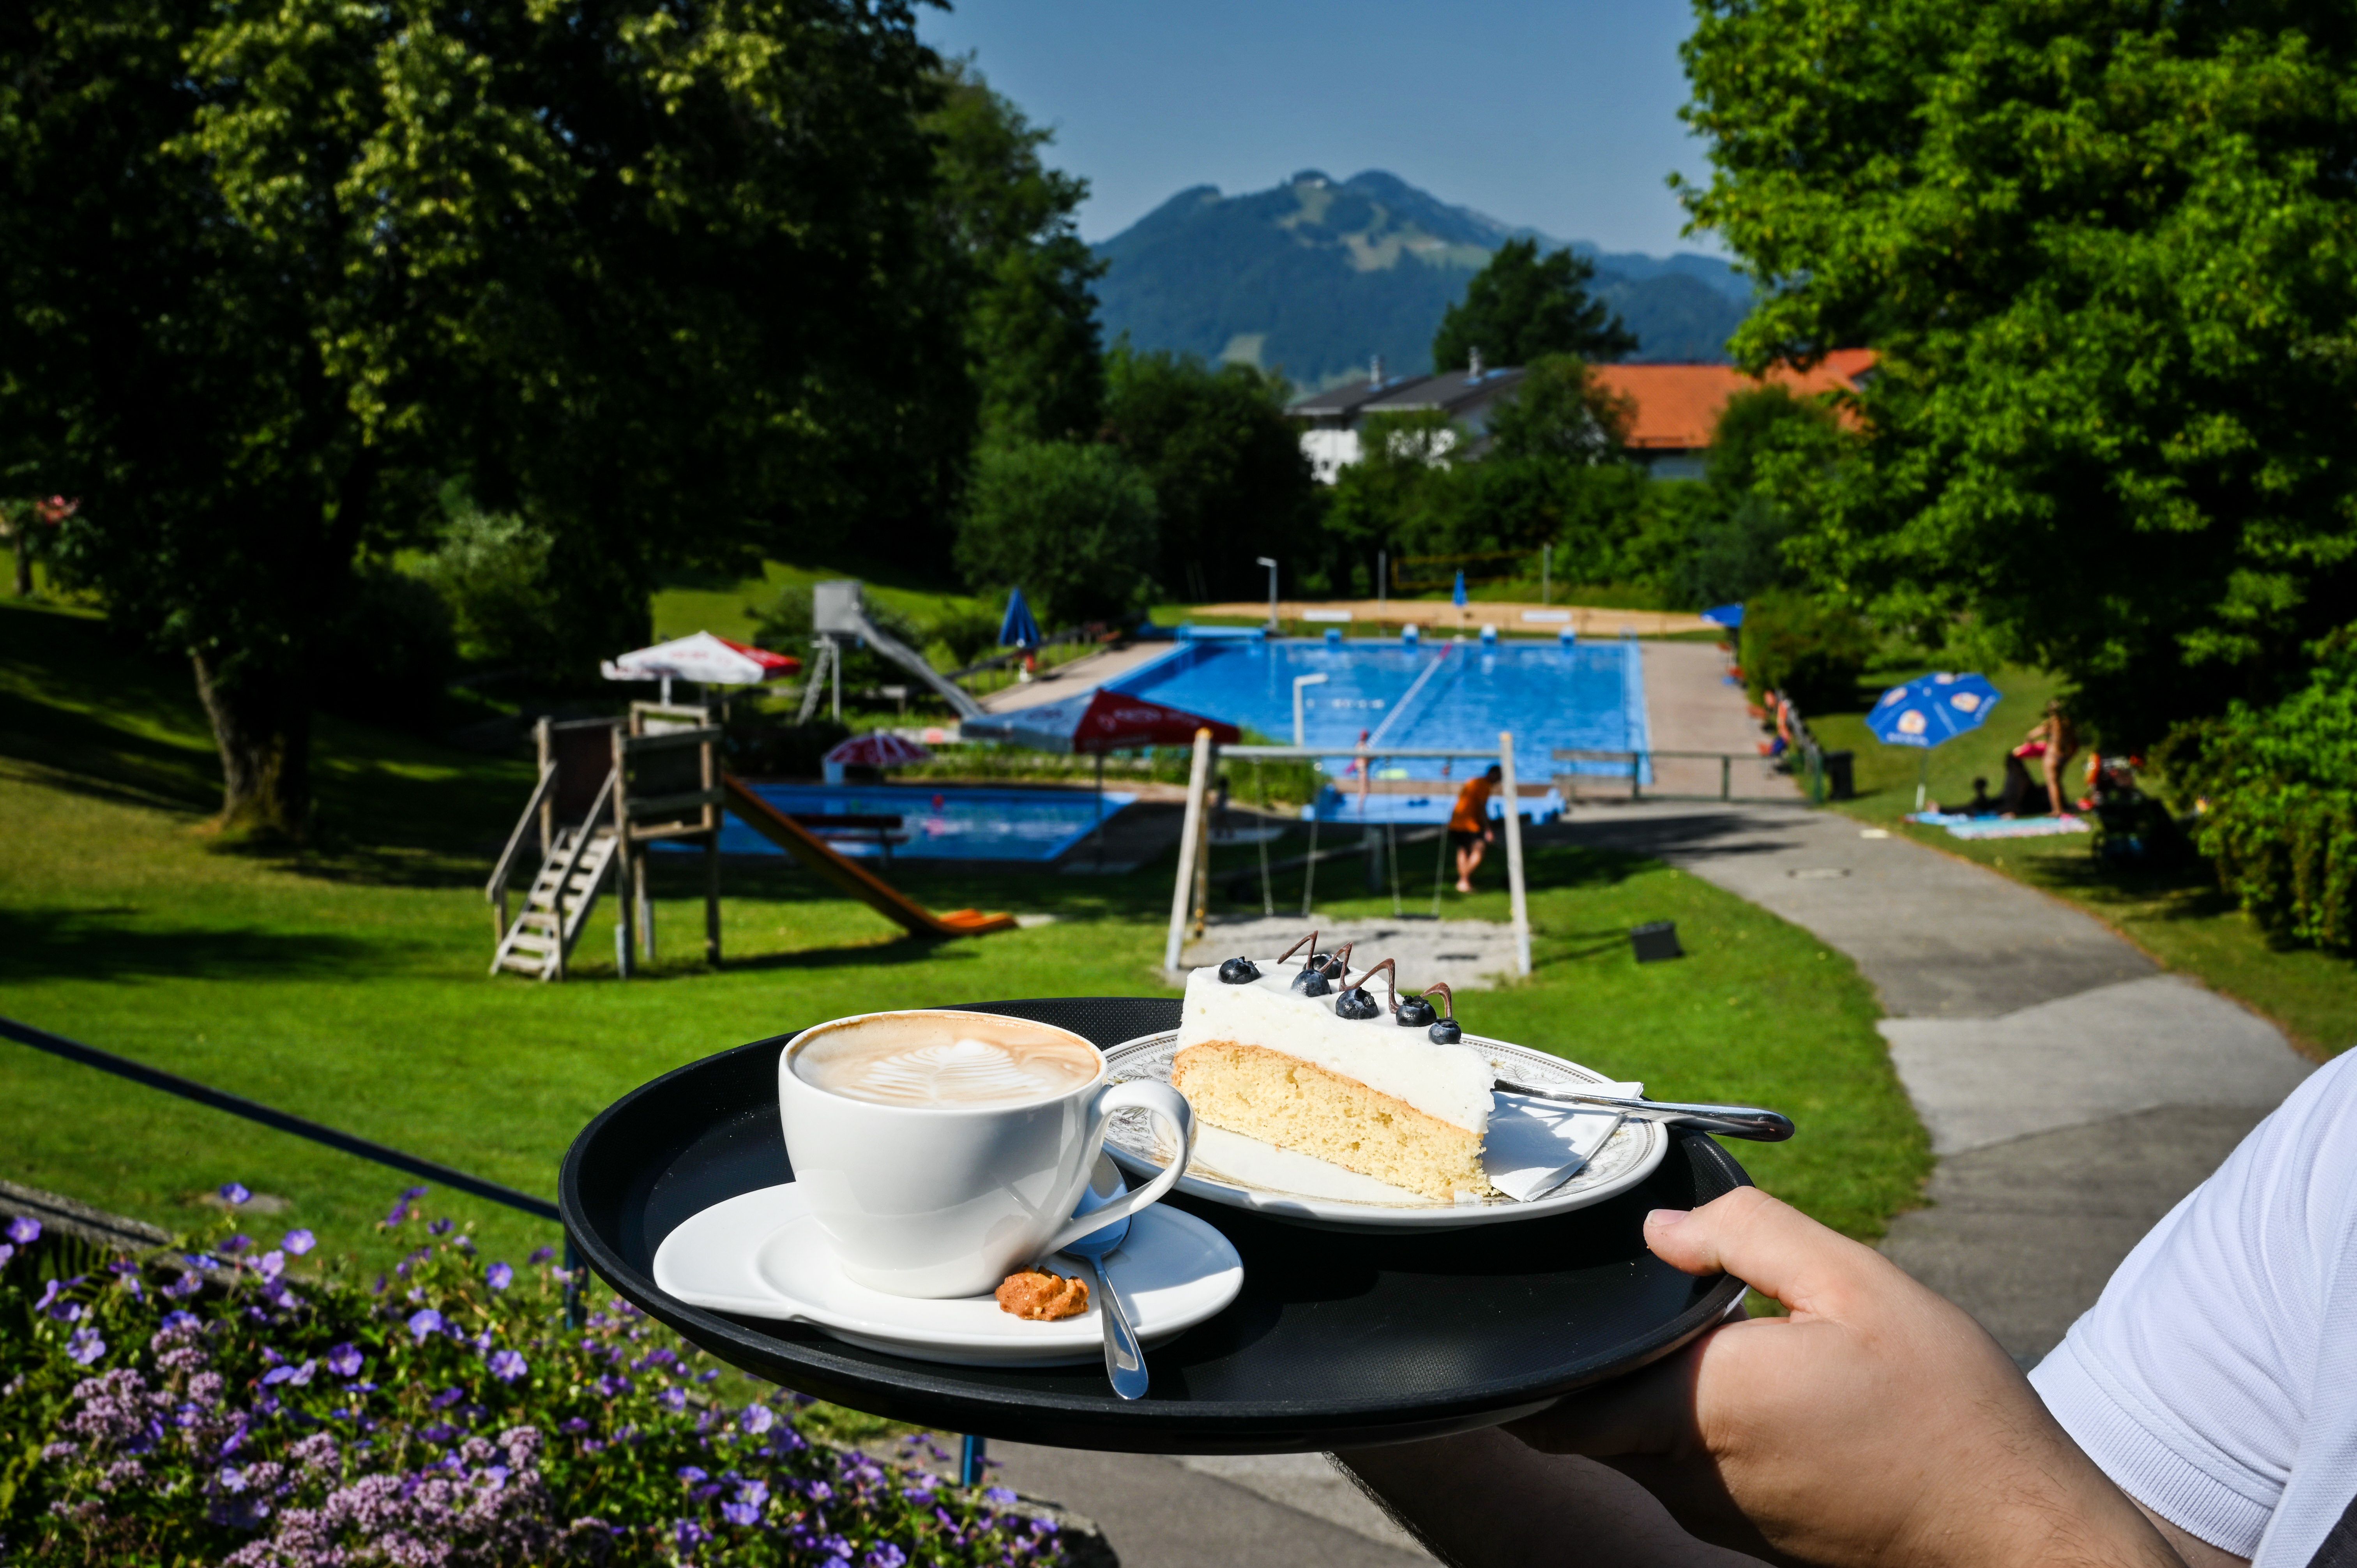 Die Kaffeestube Rettenberg befindet sich direkt neben dem Freibad im Ort. Liebevoll gebackene Torten und Kuchen sowie süße und herzhafte kleine Speisen werden hier serviert.